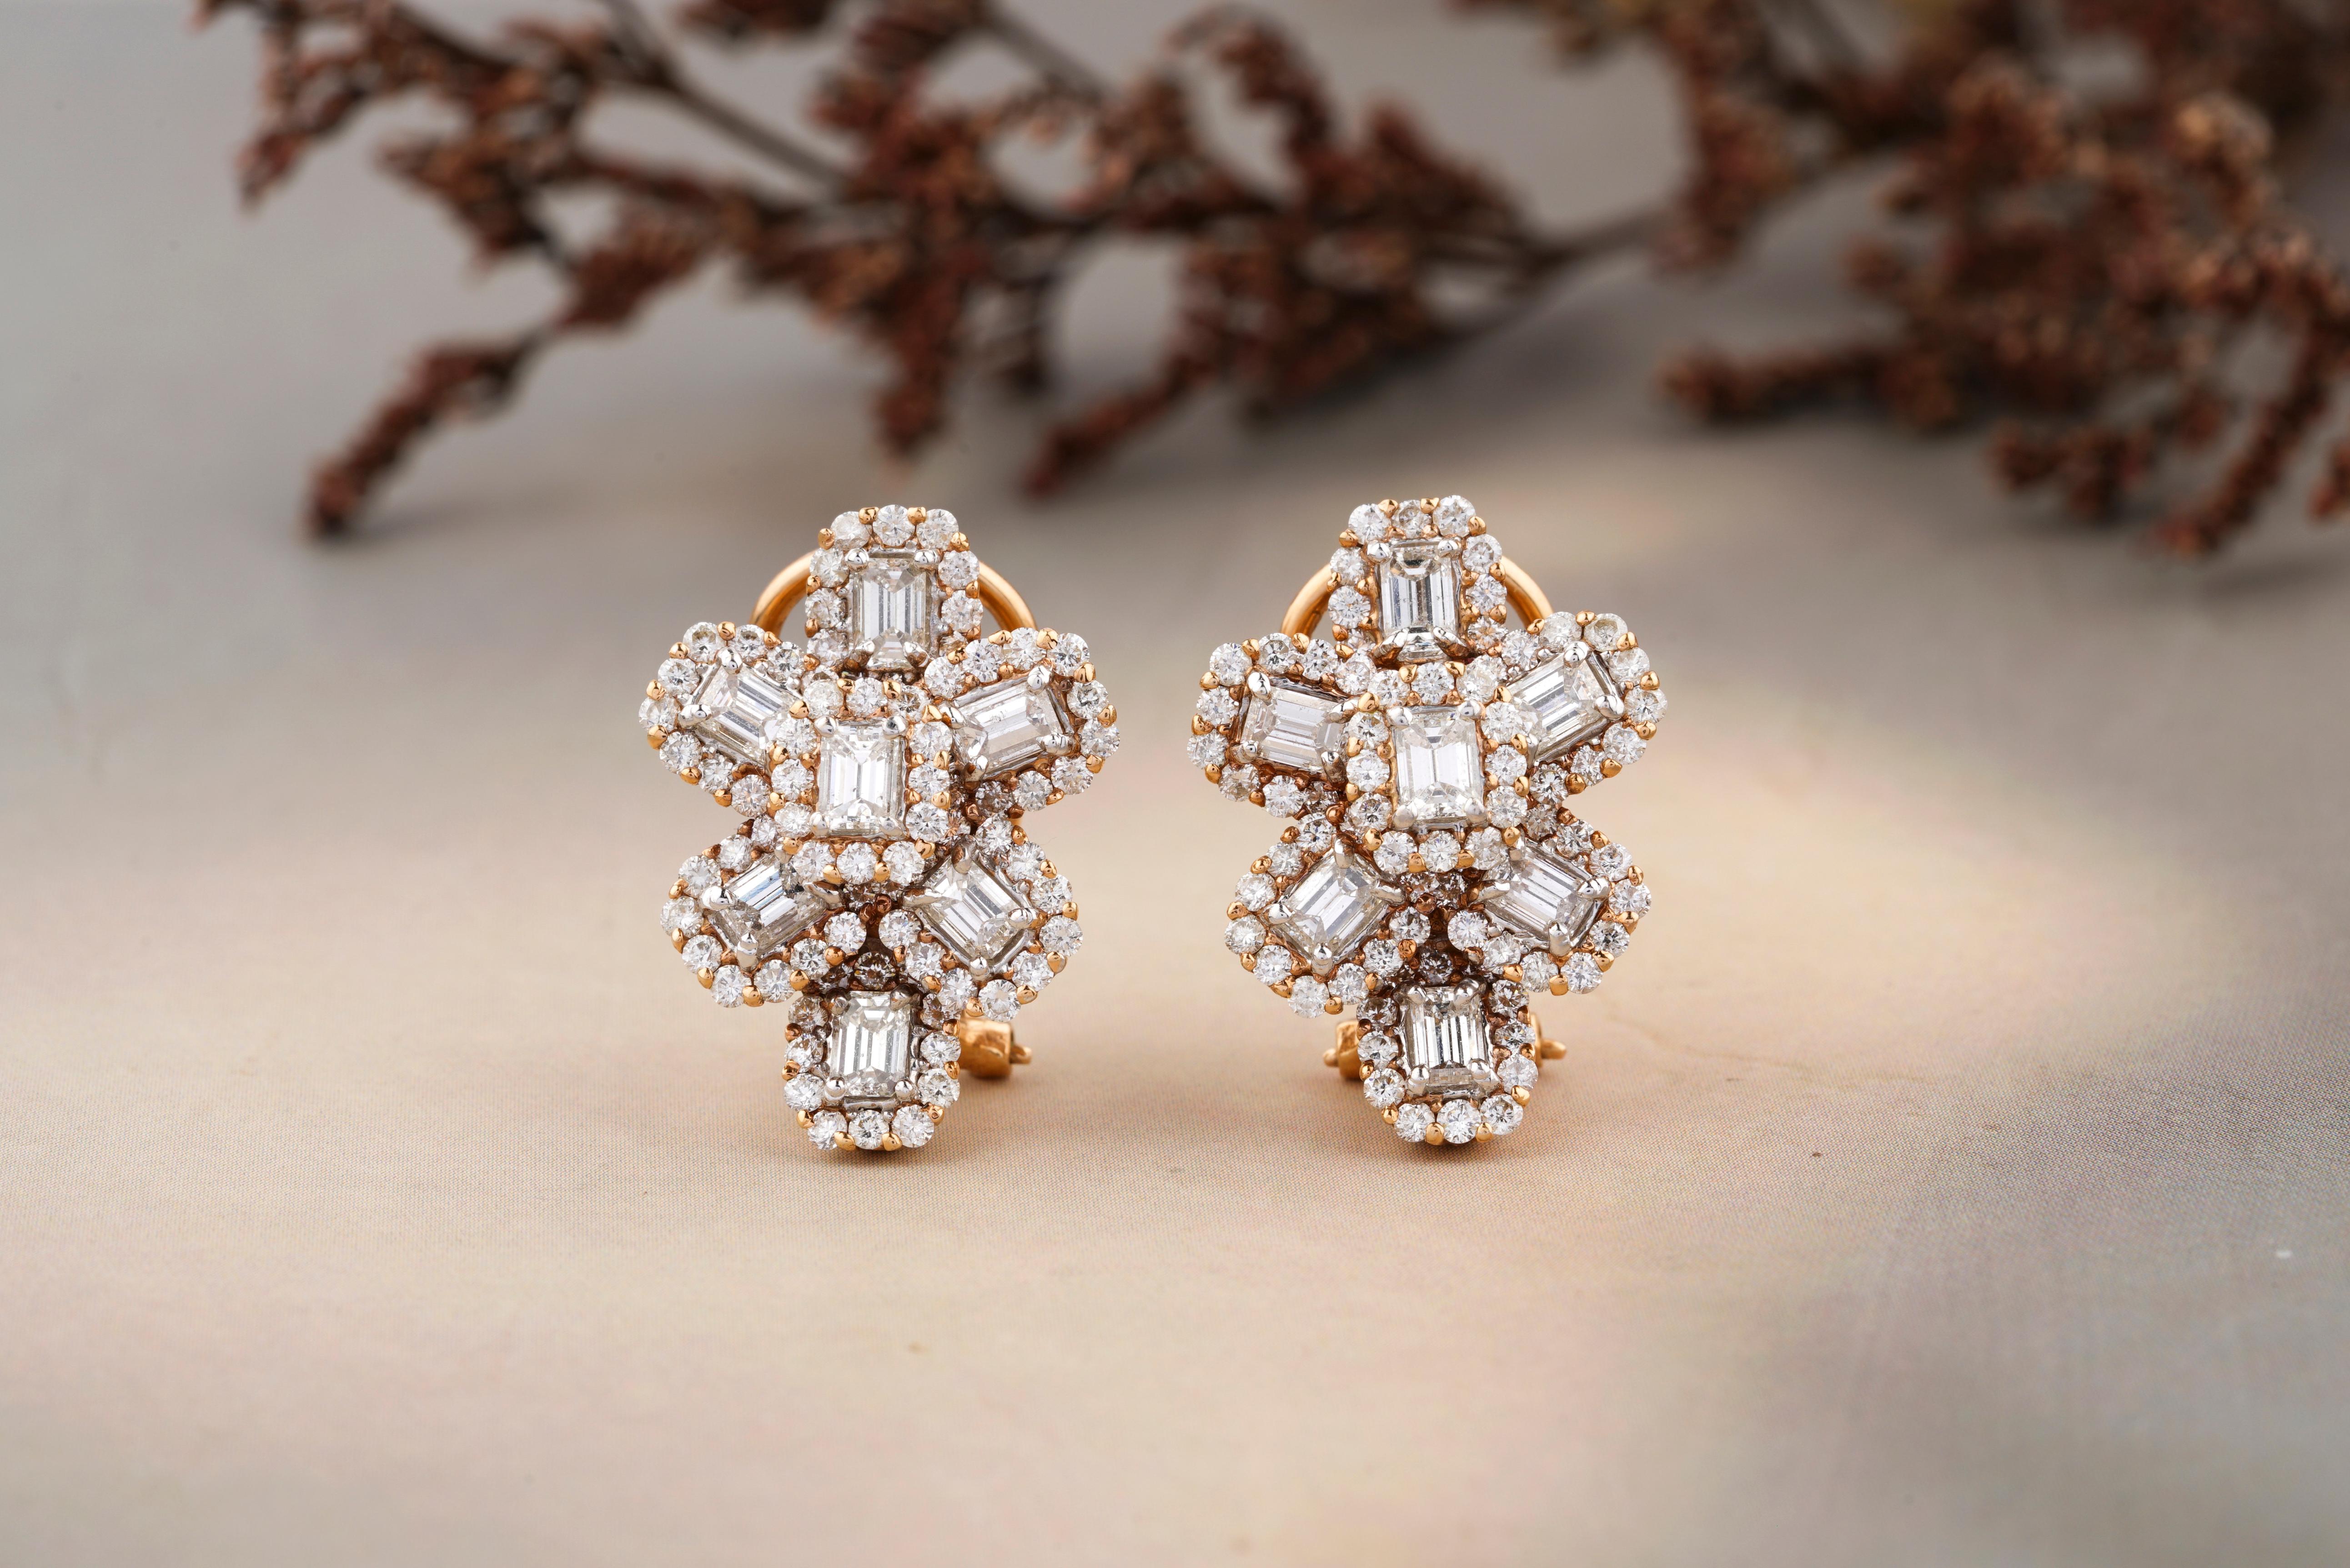 Diese Ohrringe bestechen durch ihr florales Design mit einer Kombination aus Diamanten im Smaragd- und Rundschliff, die in 18 Karat Gold gefasst sind. Die rund geschliffenen Diamanten bilden eine Kontur um die zentralen Diamanten im Smaragdschliff